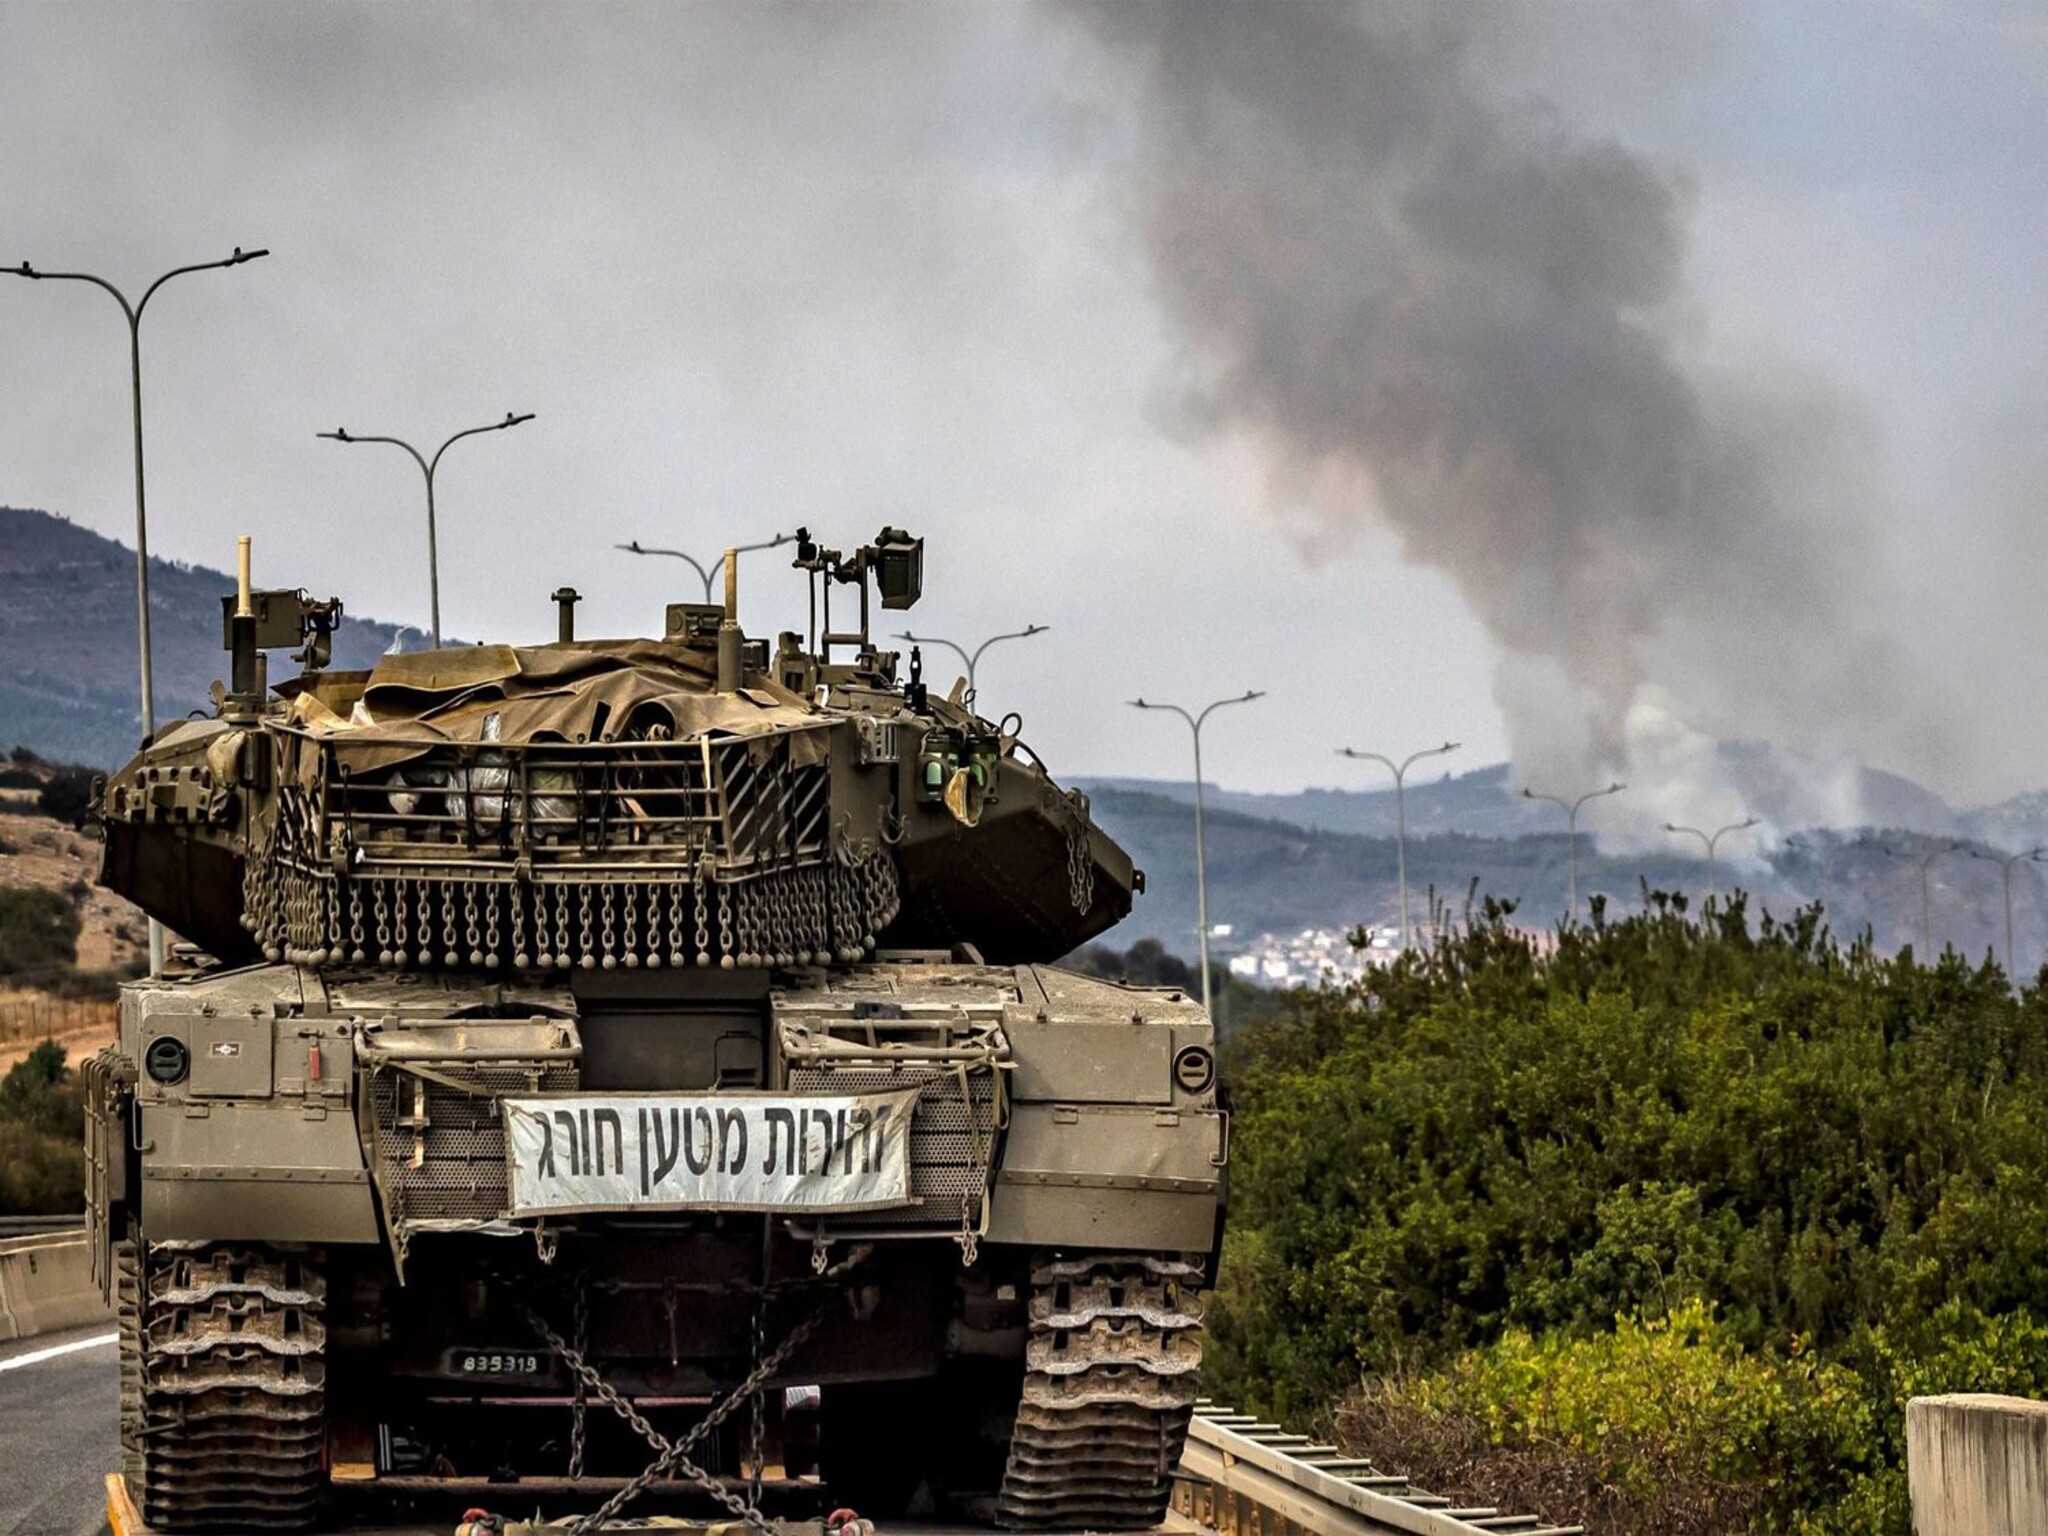 الجيش الإسرائيلي يرد علي هجمات حزب الله بقصف المنطقة الحدودية مع لبنان